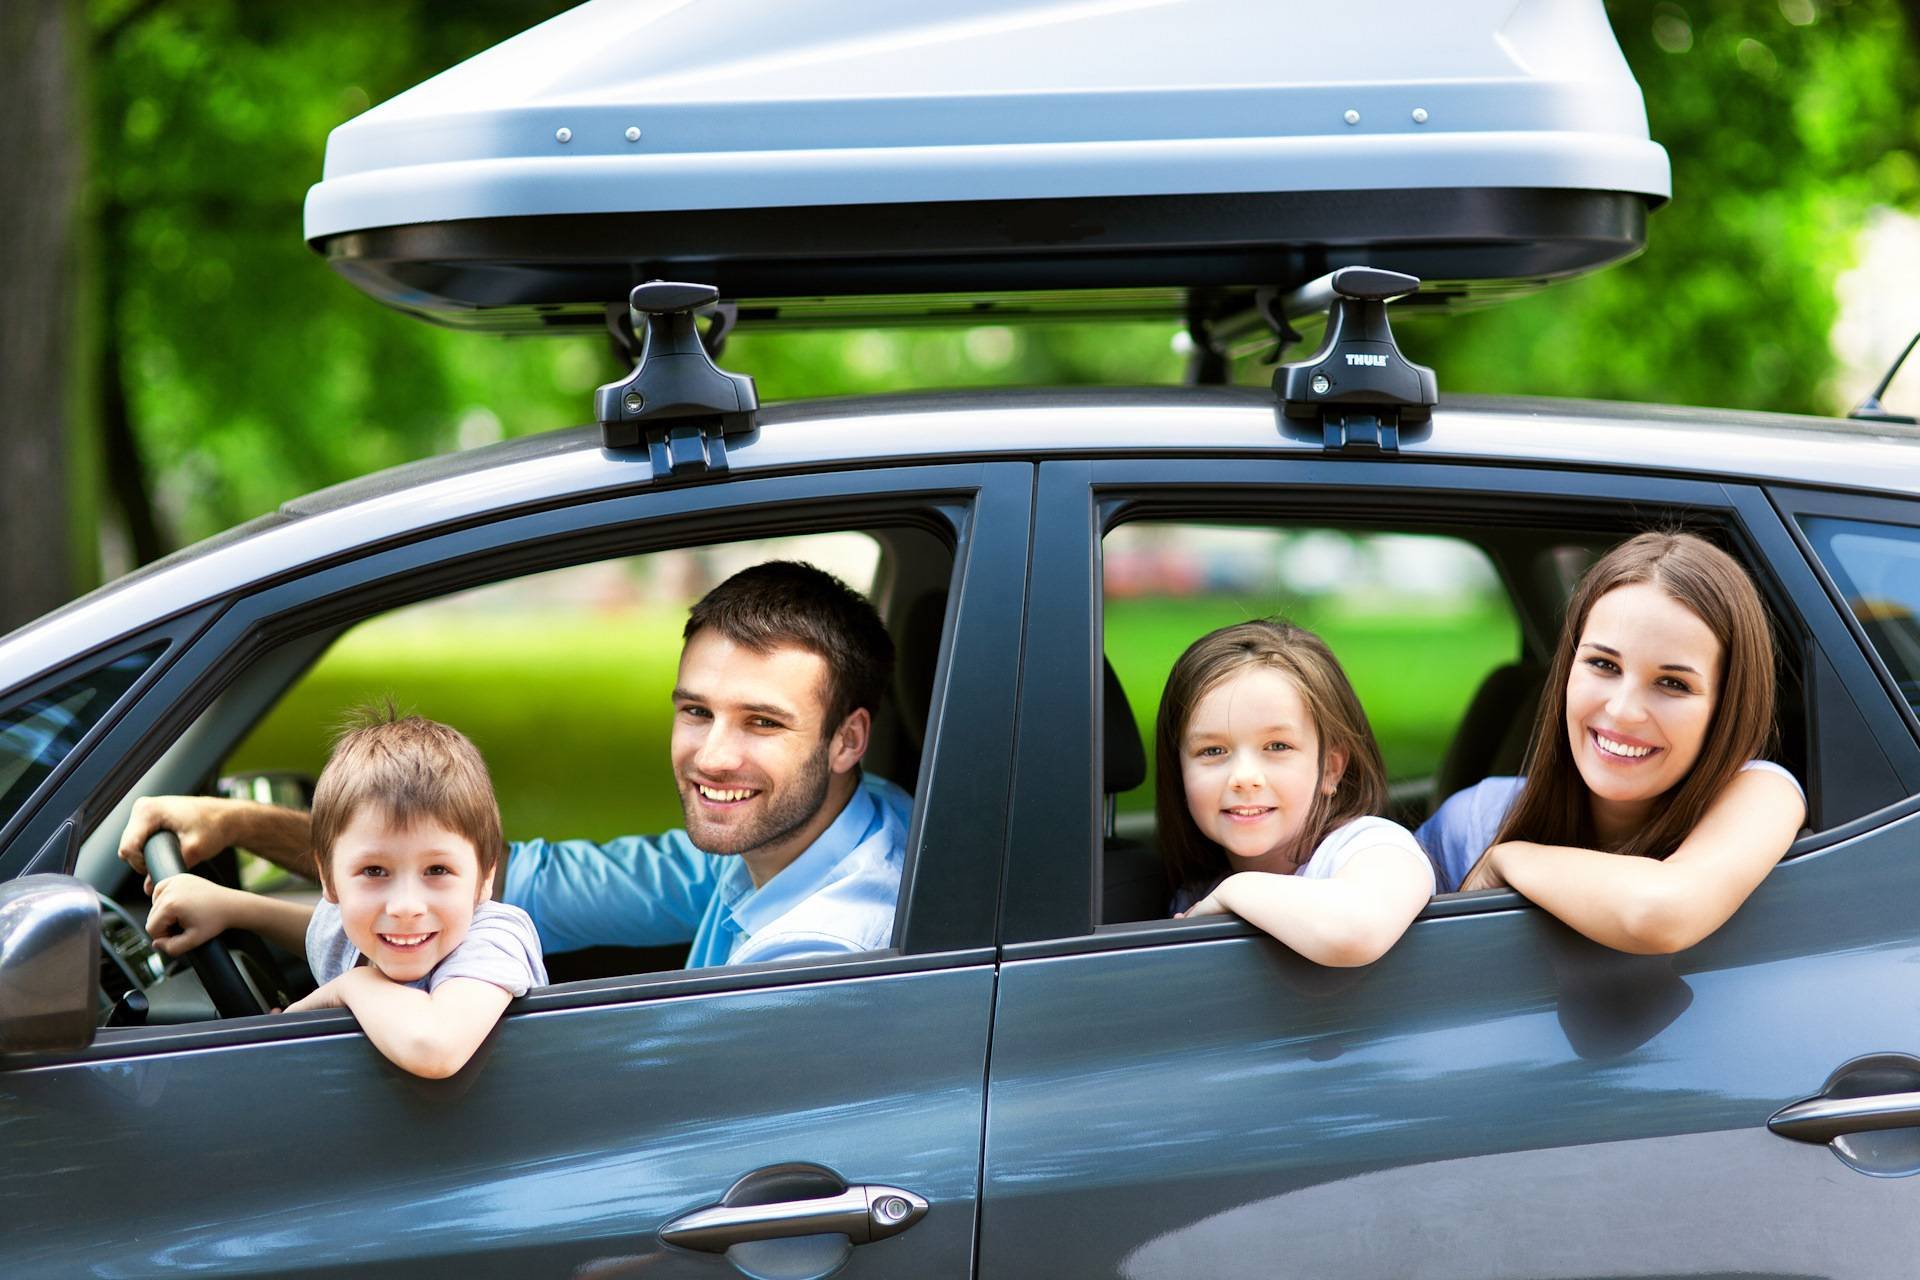 Семья отправились в путешествие на автомобиле. Семейная машина. Семья с автомобилем. Машина для путешествий семьей. Путешествие с семьей.